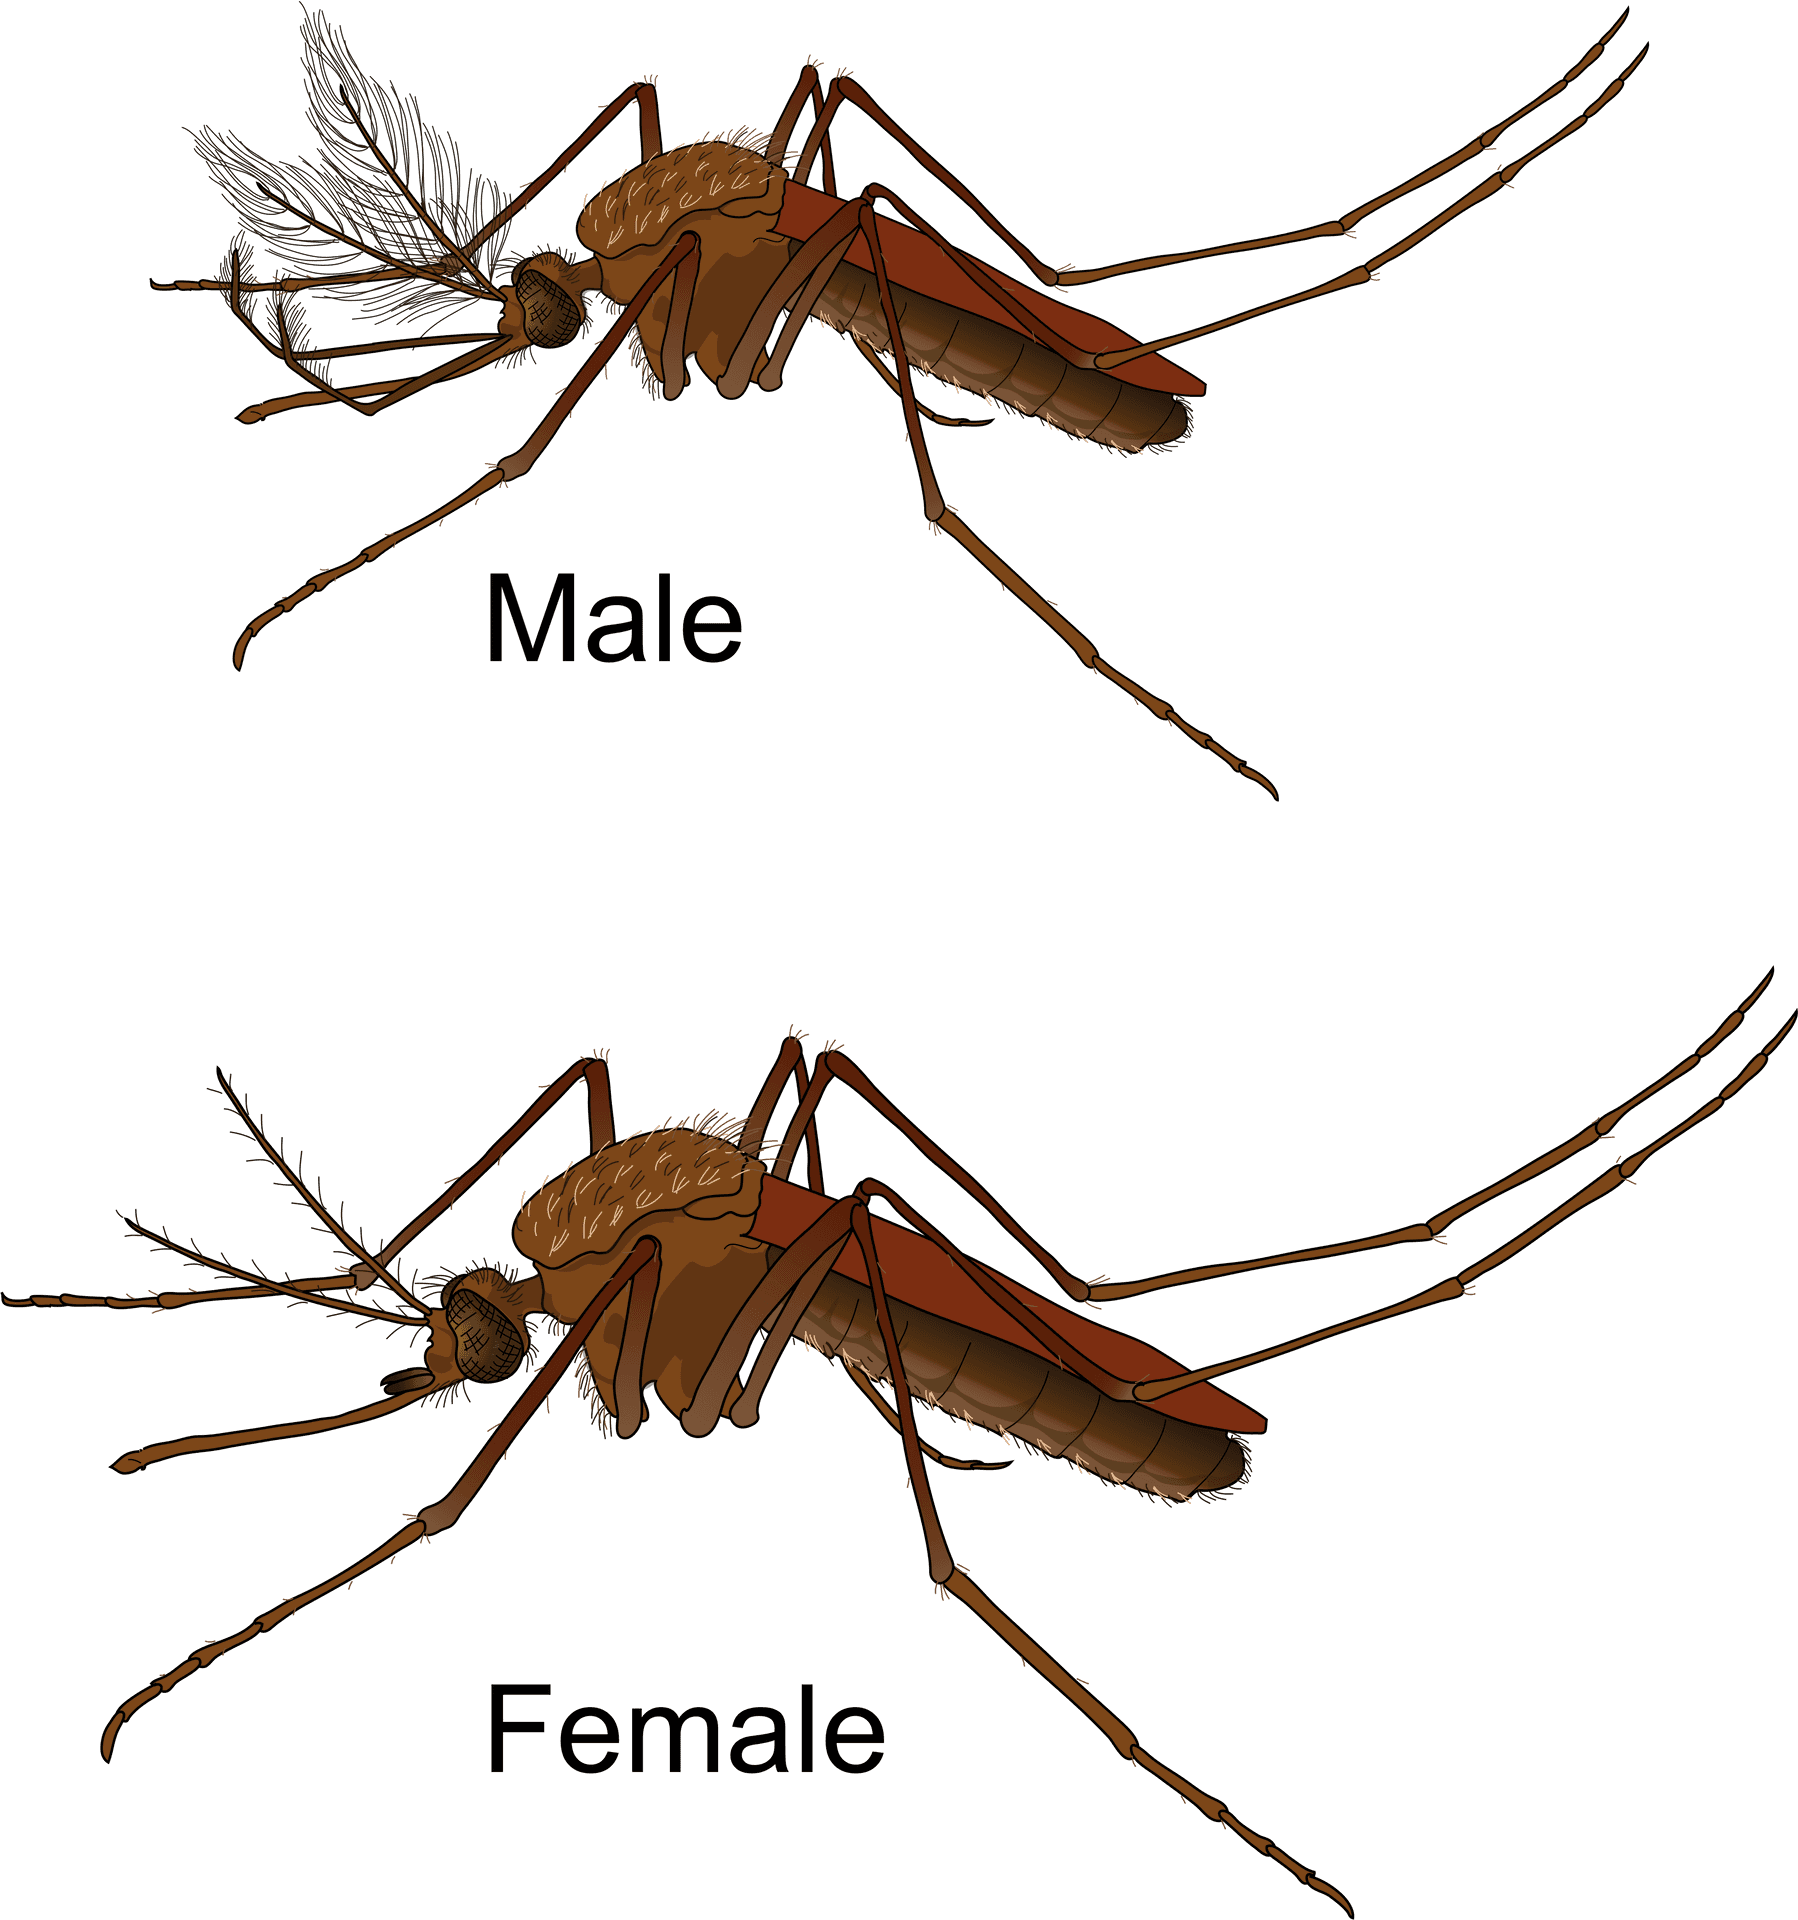 Maleand Female Mosquito Comparison PNG